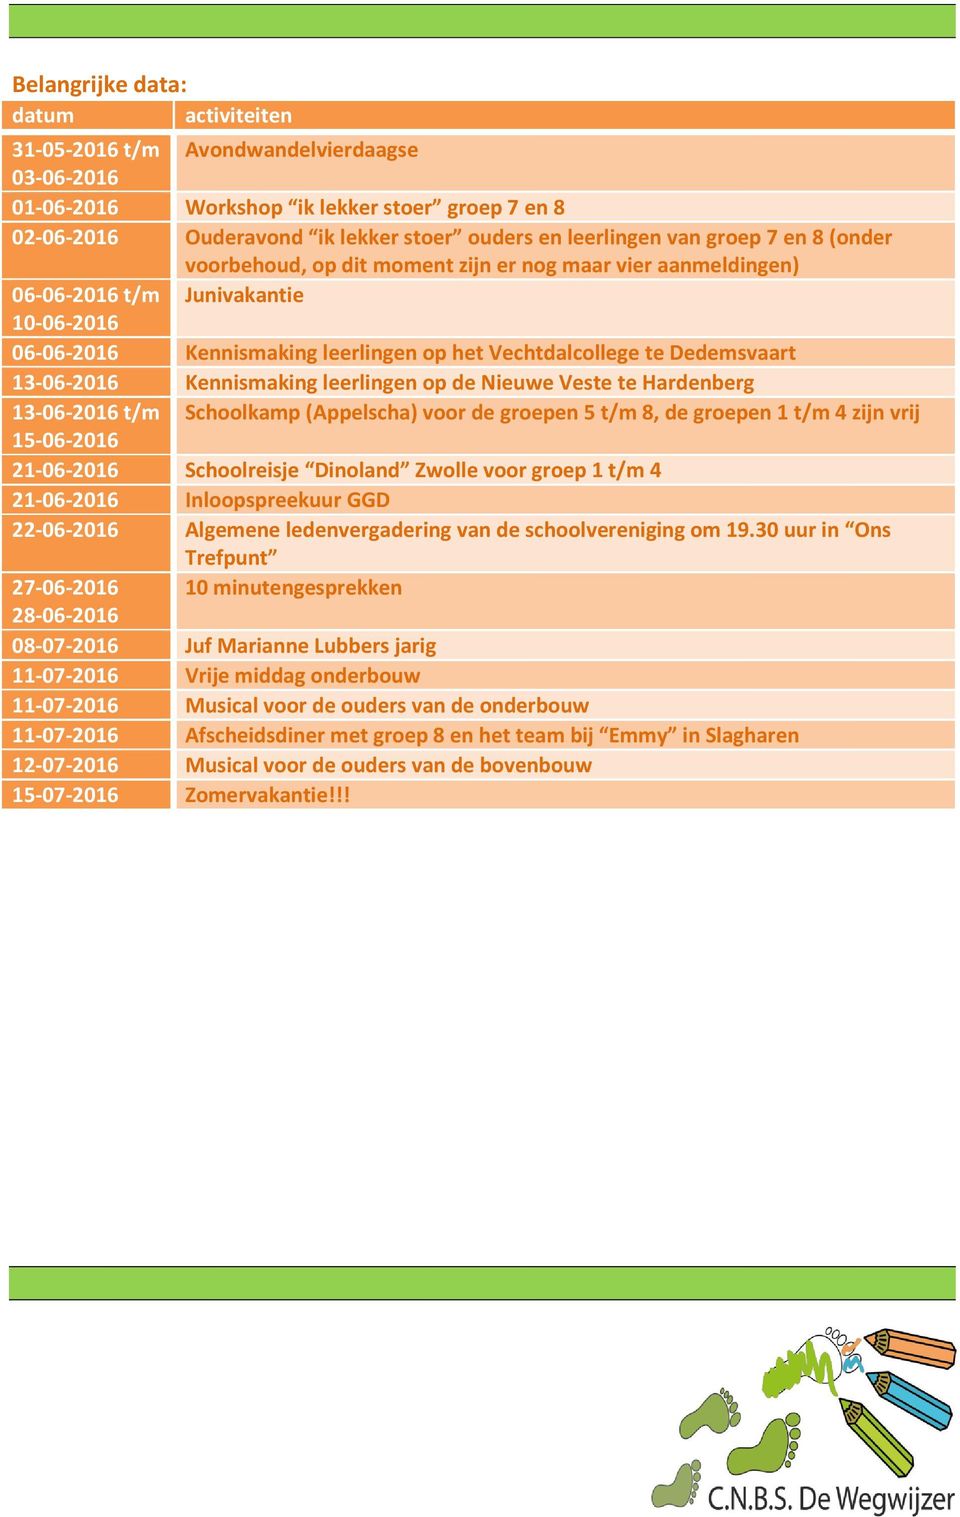 13-06-2016 Kennismaking leerlingen op de Nieuwe Veste te Hardenberg 13-06-2016 t/m Schoolkamp (Appelscha) voor de groepen 5 t/m 8, de groepen 1 t/m 4 zijn vrij 15-06-2016 21-06-2016 Schoolreisje